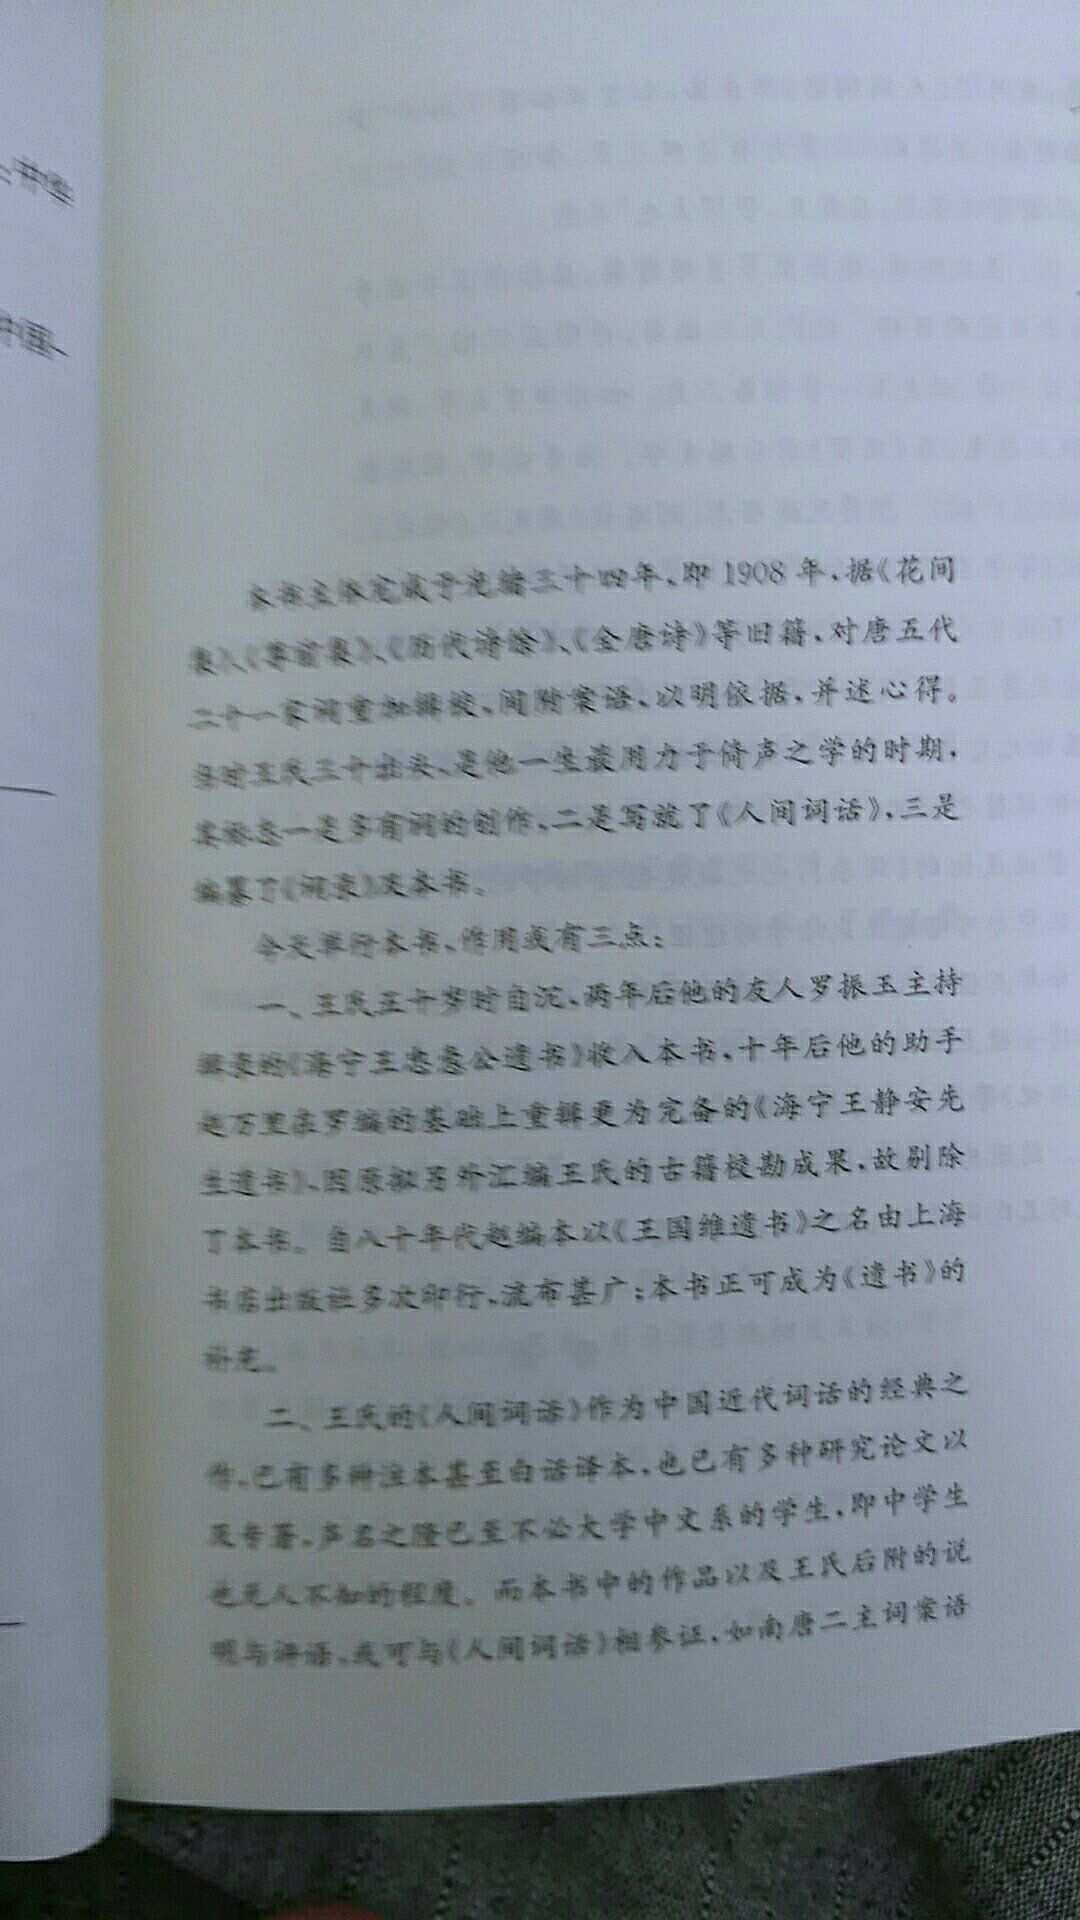 王国维31岁时辑编，中华书局的定价适中。